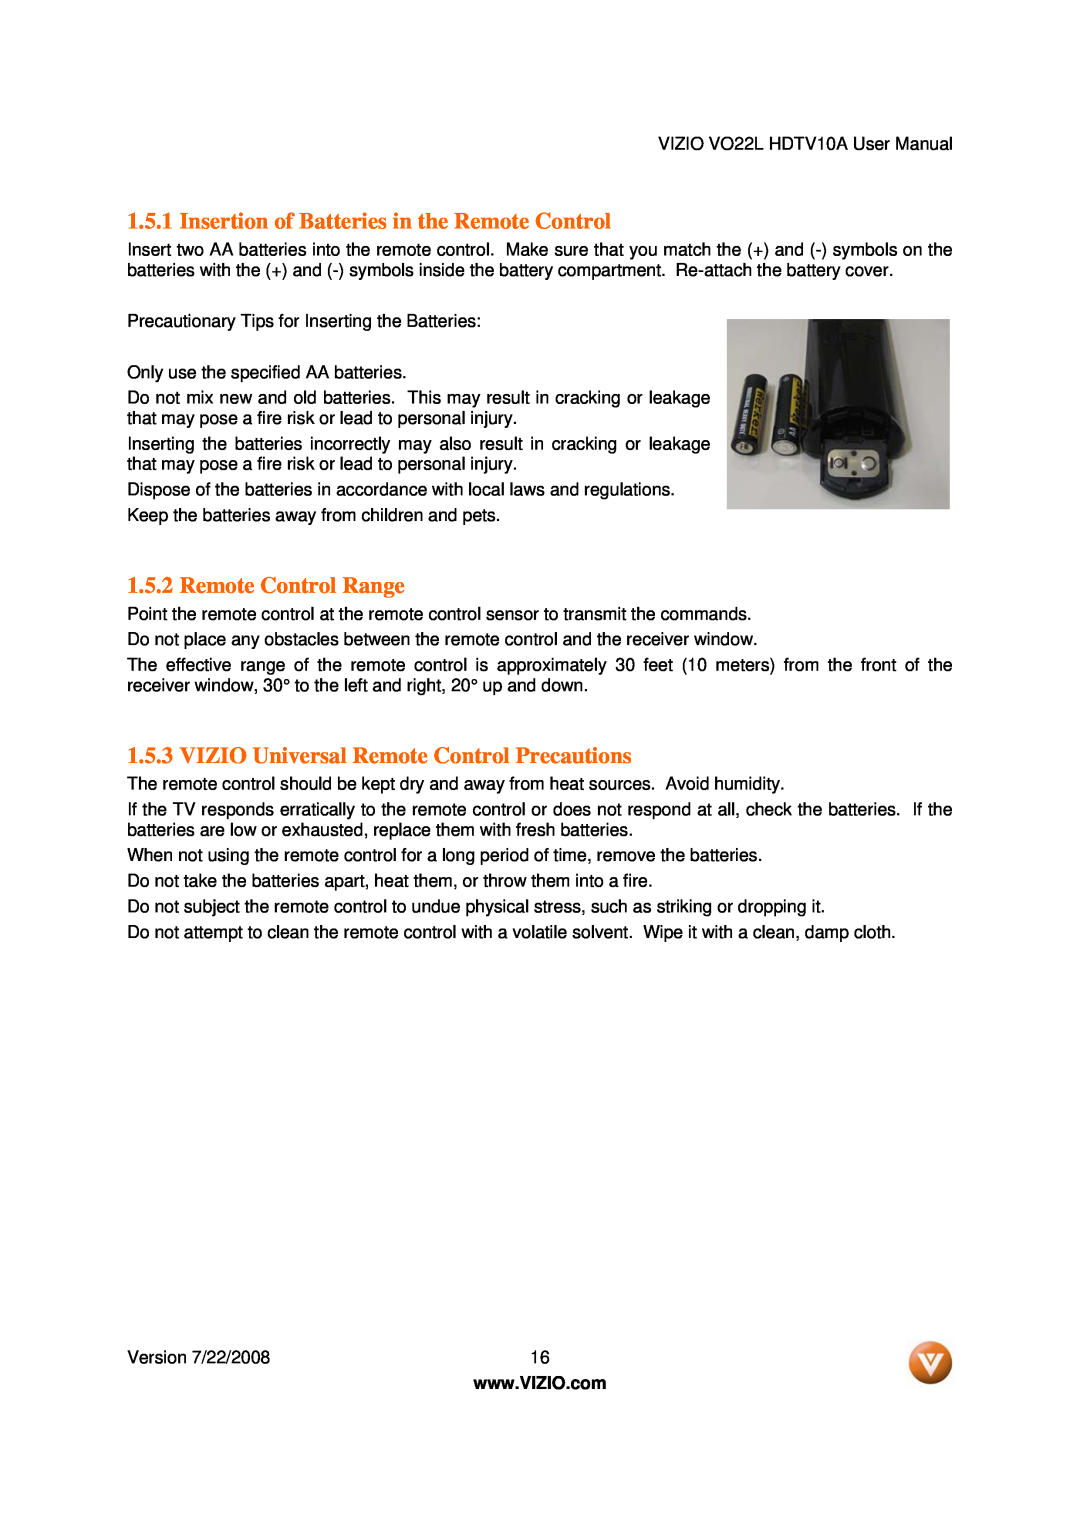 Vizio VO22L Insertion of Batteries in the Remote Control, Remote Control Range, VIZIO Universal Remote Control Precautions 